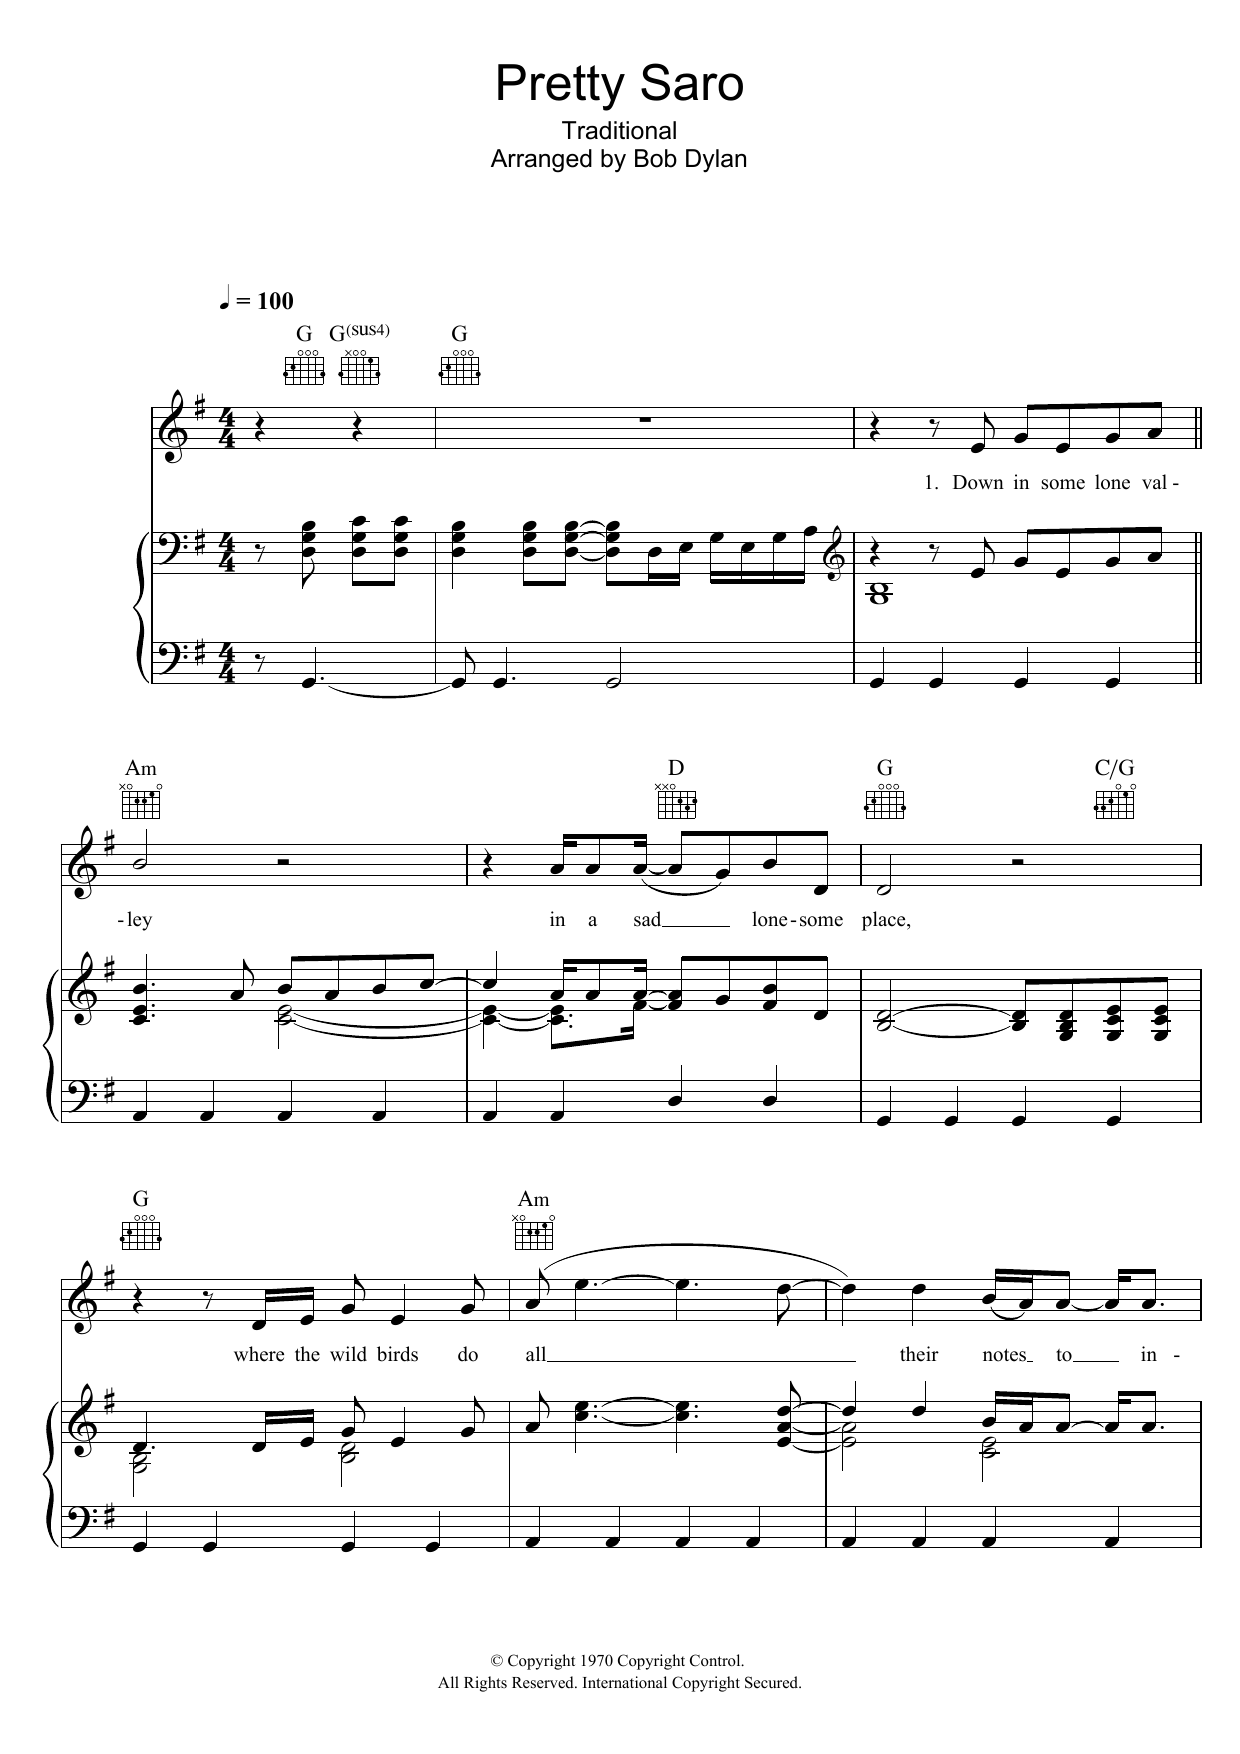 Bob Dylan Pretty Saro Sheet Music Notes & Chords for Banjo Lyrics & Chords - Download or Print PDF